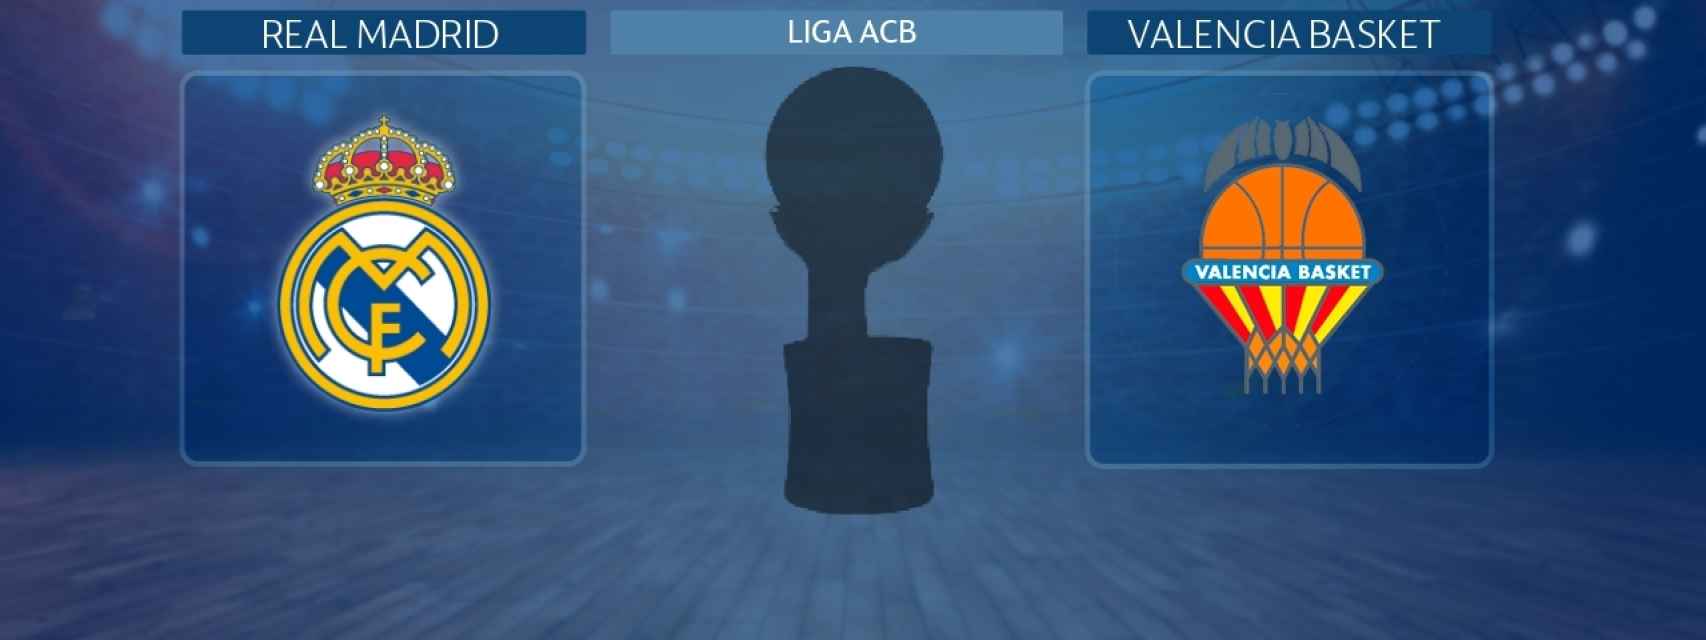 Real Madrid - Valencia Basket, partido de la Liga ACB